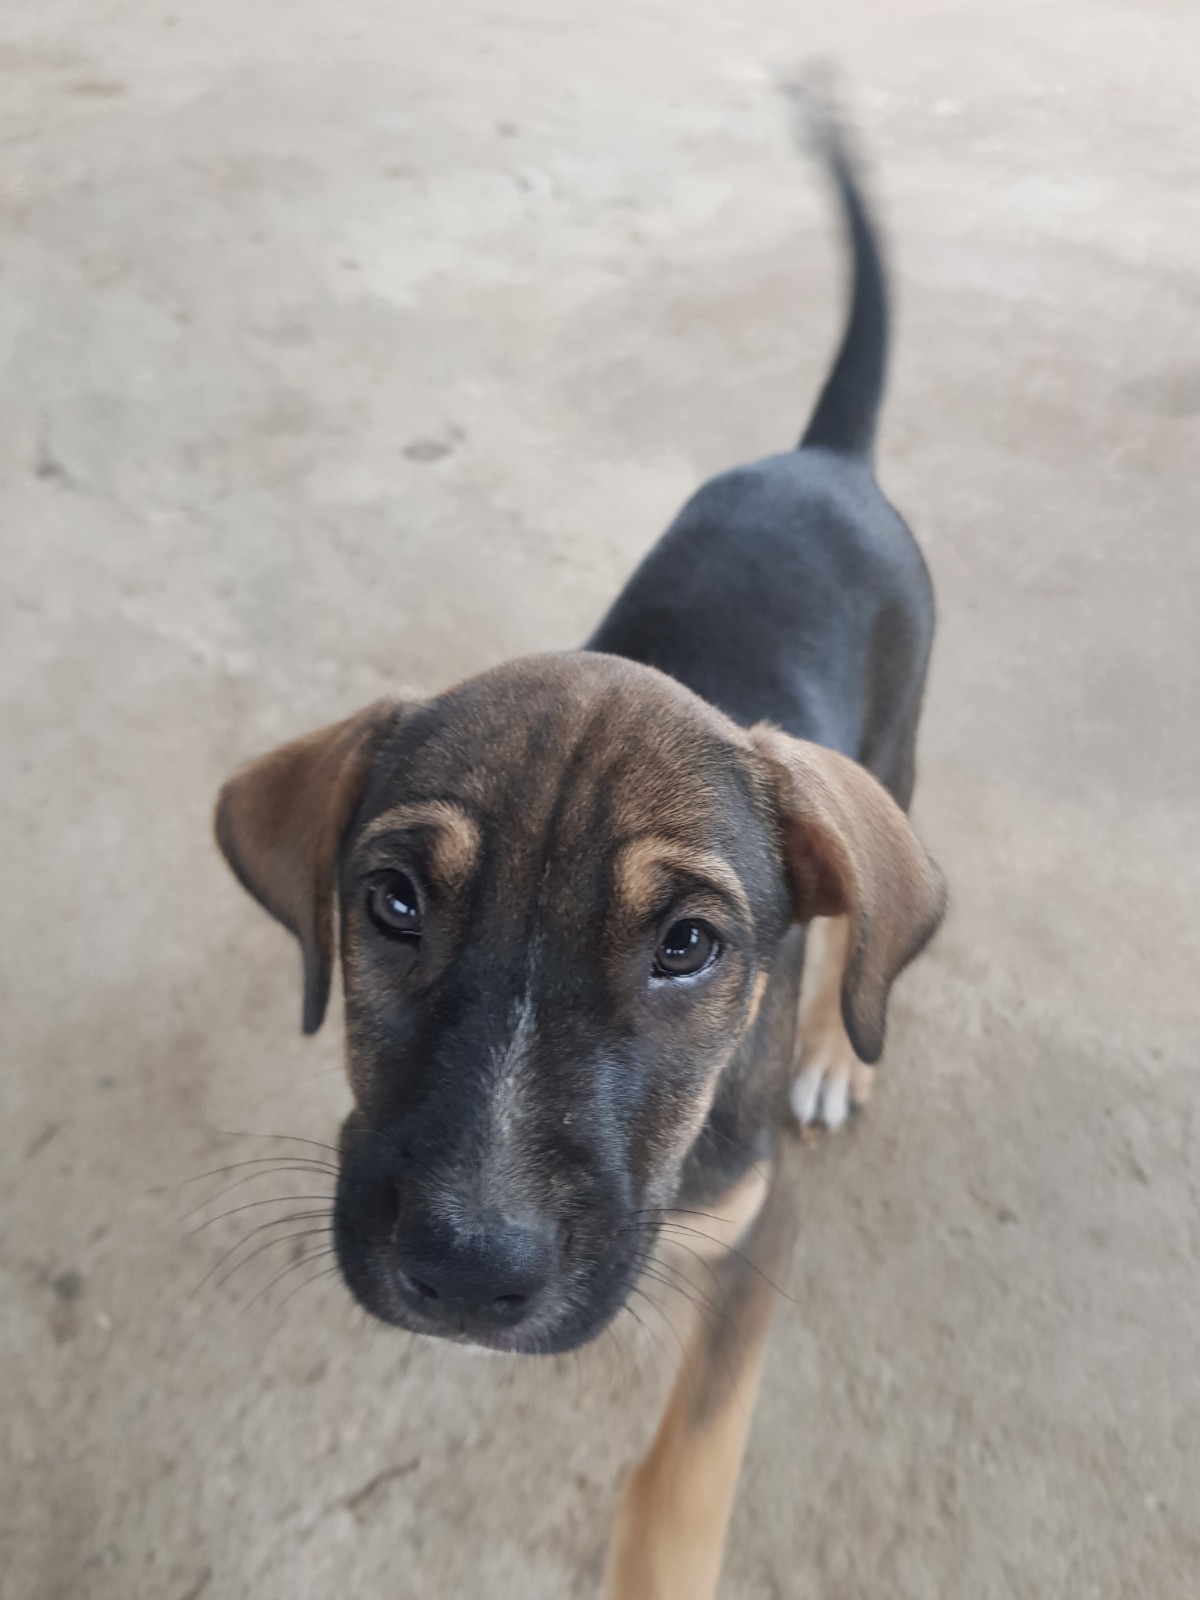 Procura-se Ogum: filhote de cachorro foi adotado em Belo Horizonte e logo após abandonado